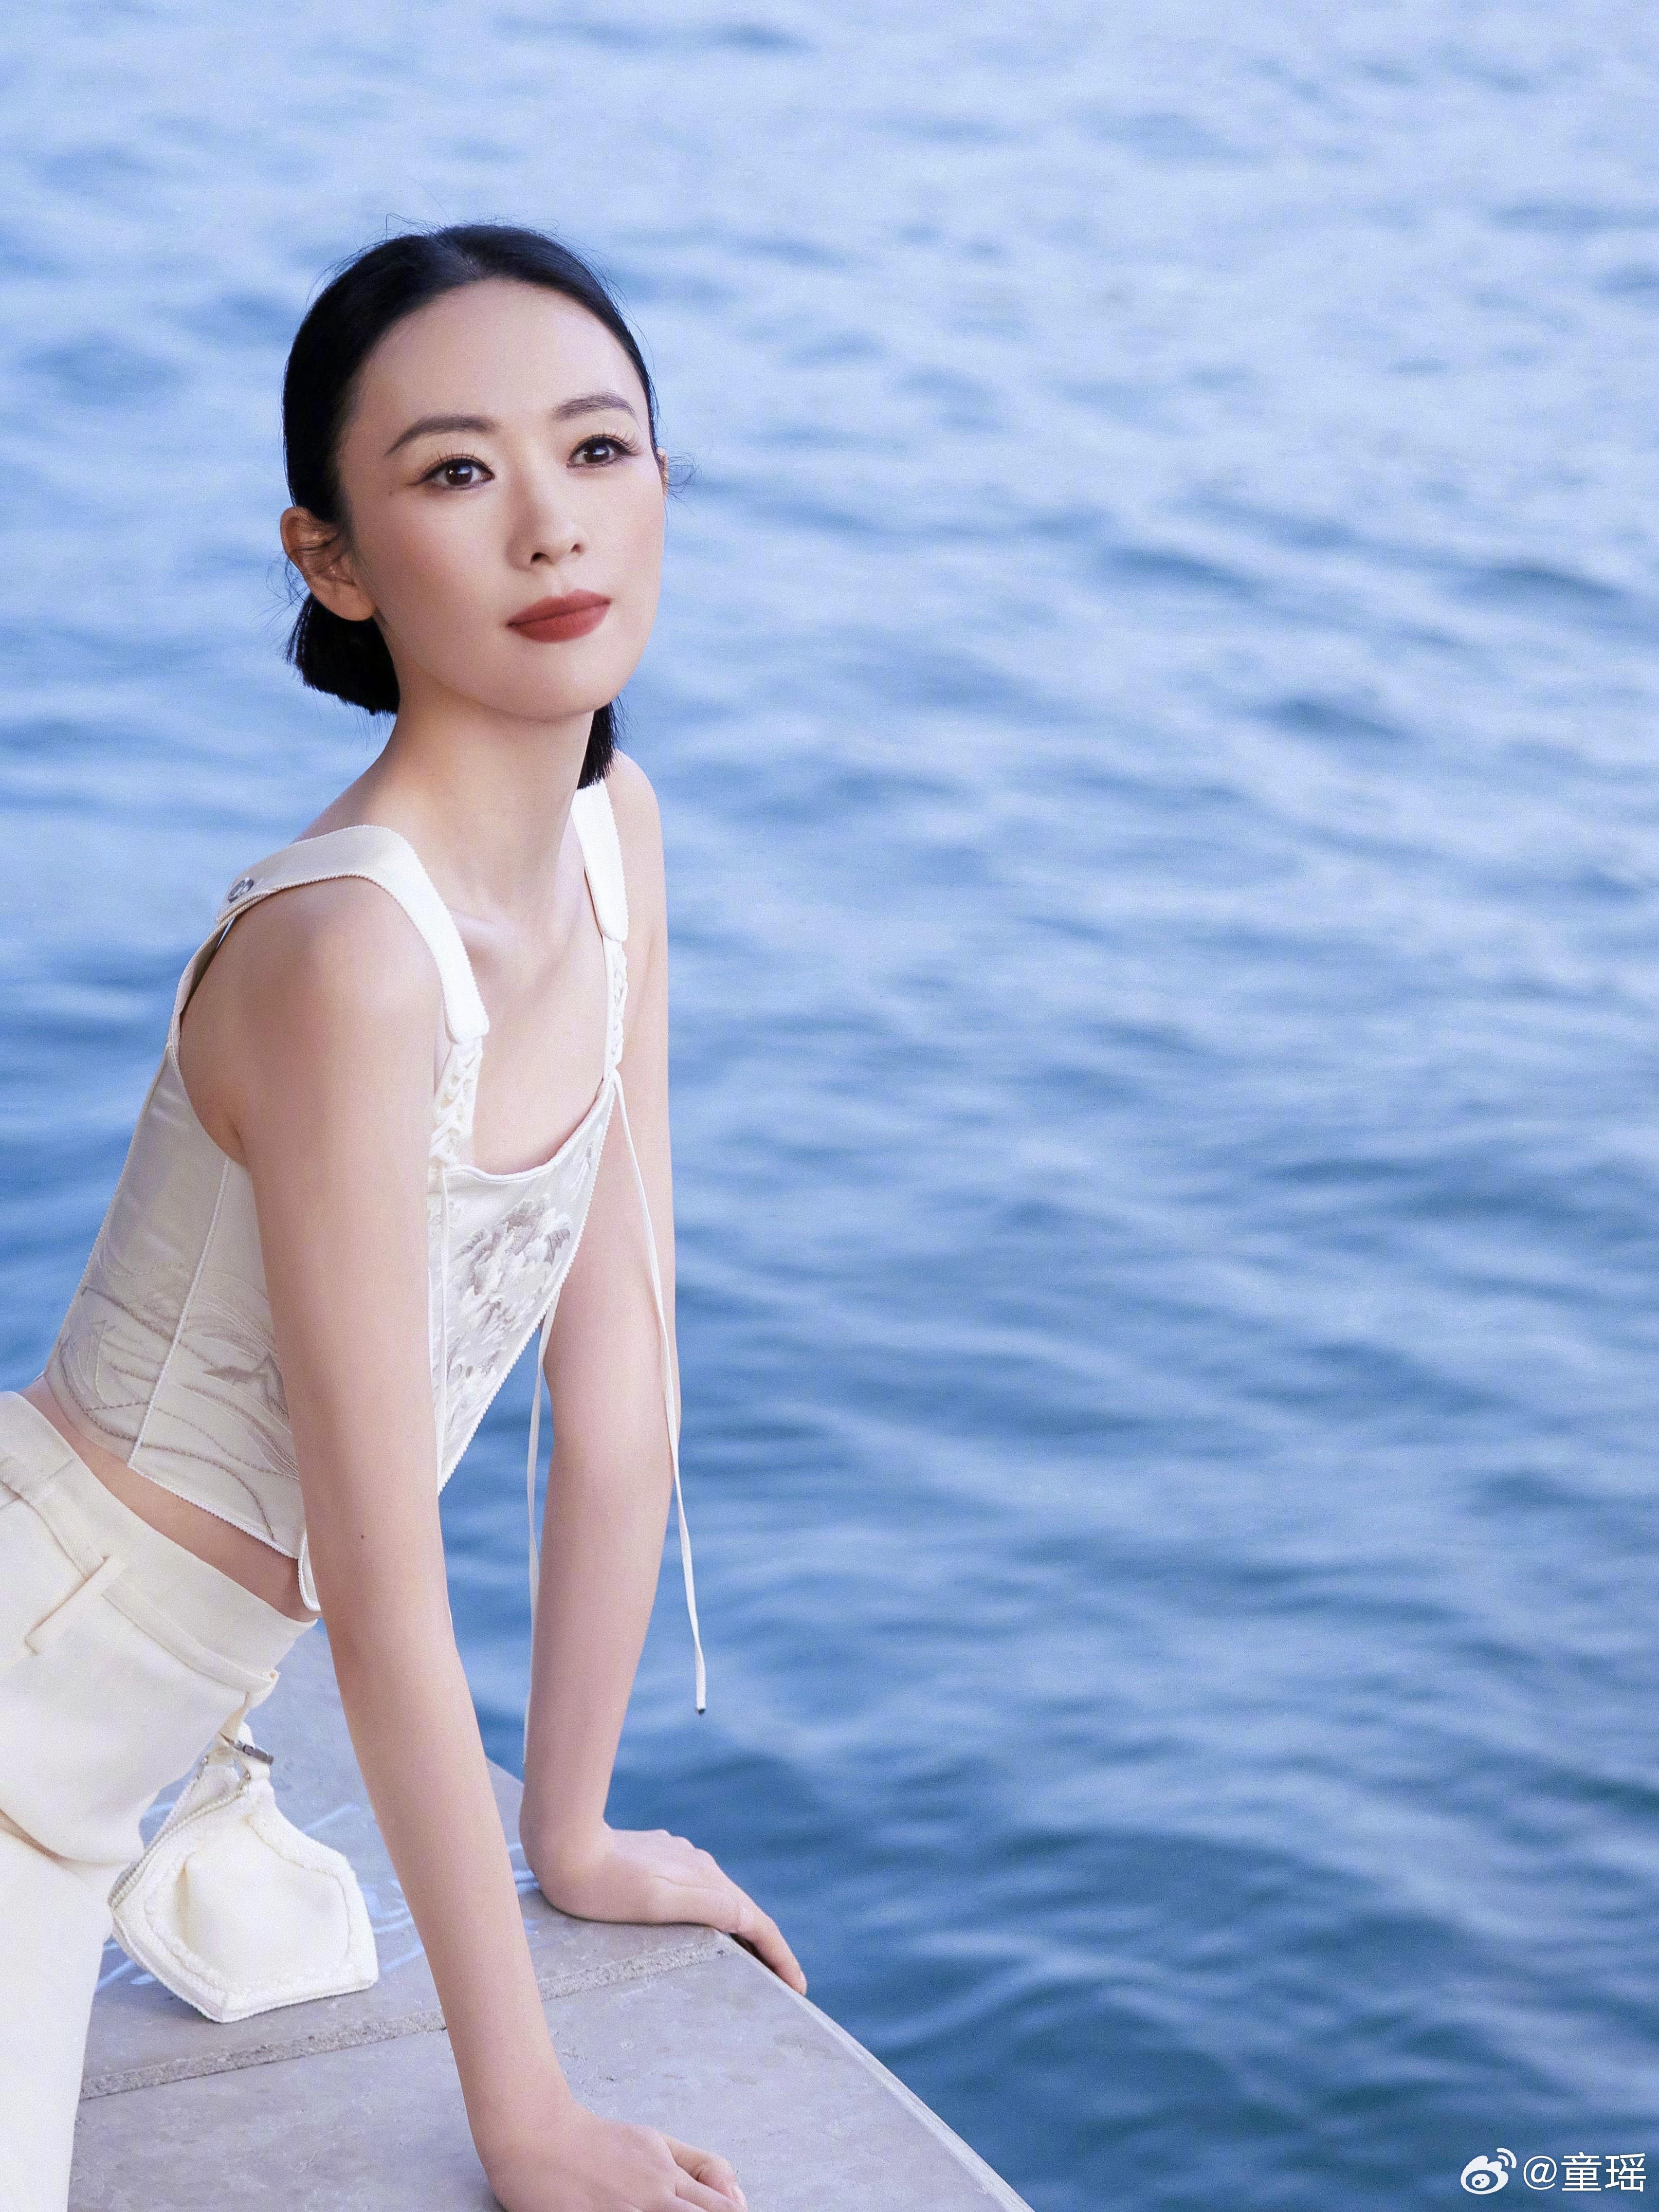 童瑶白色新中式套装现身塞纳河畔 纯洁优雅如东方茉莉,1 (0)